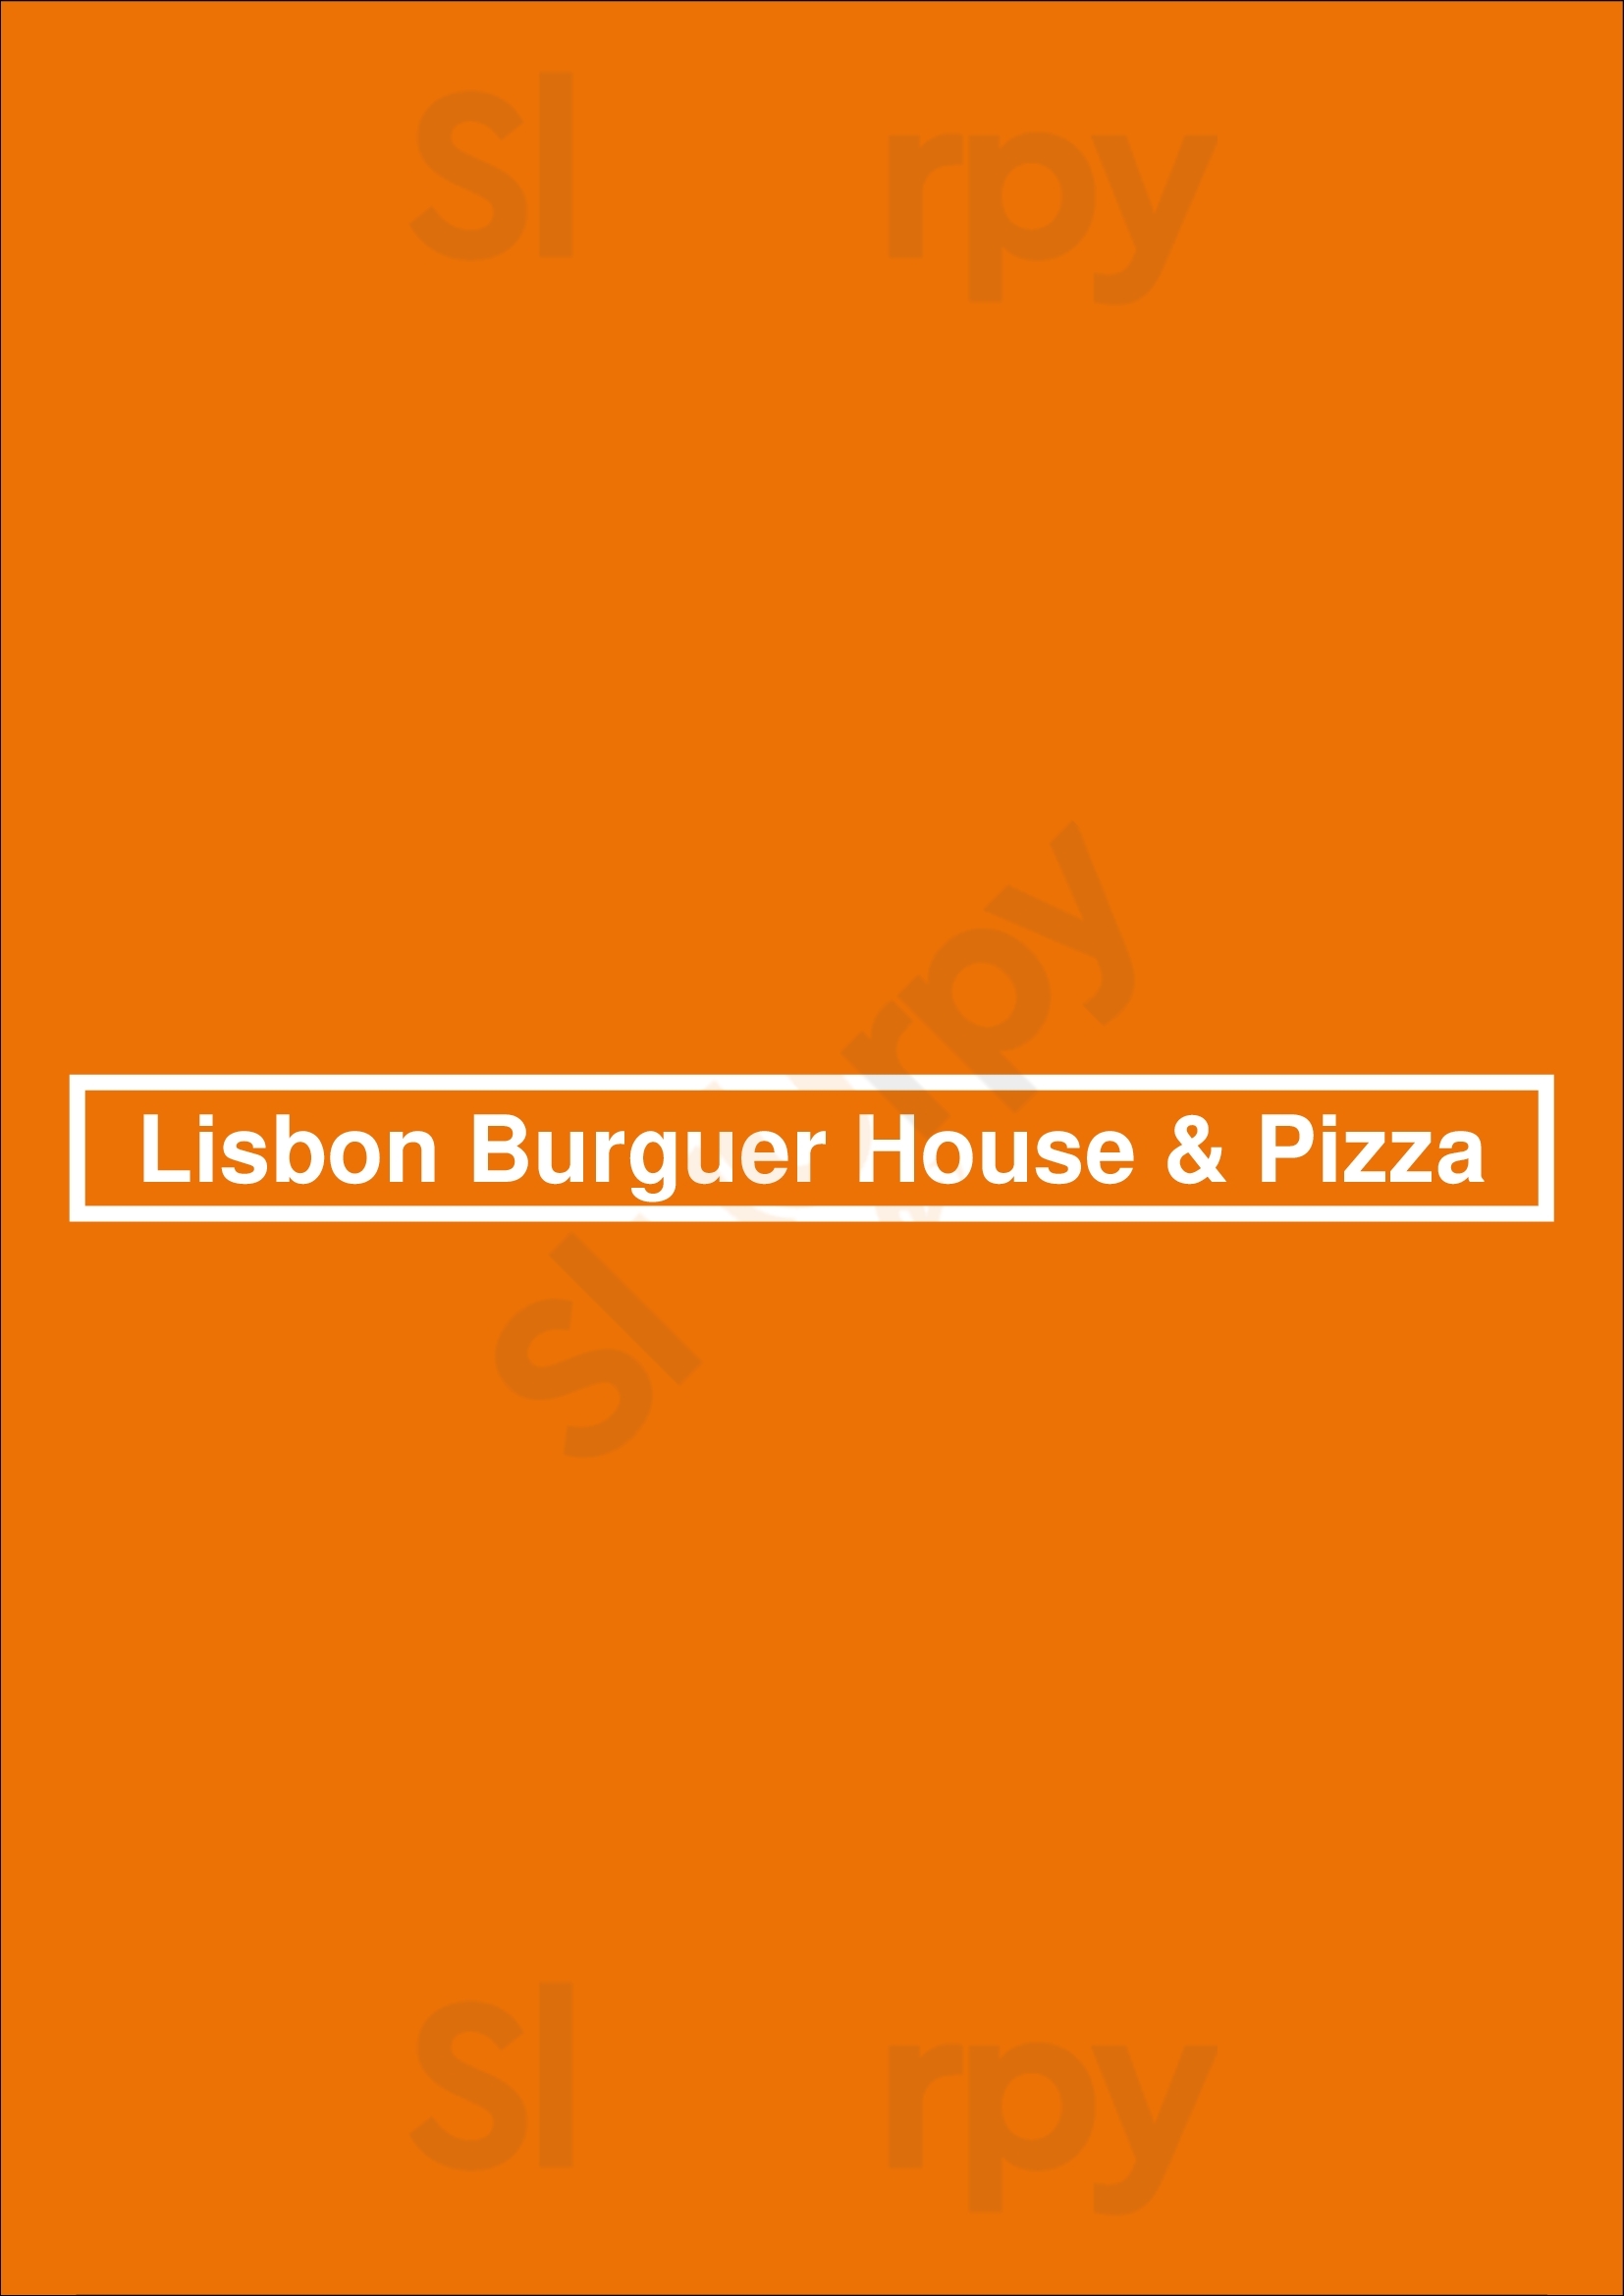 Lisbon Burger House & Pizza Lisboa Menu - 1